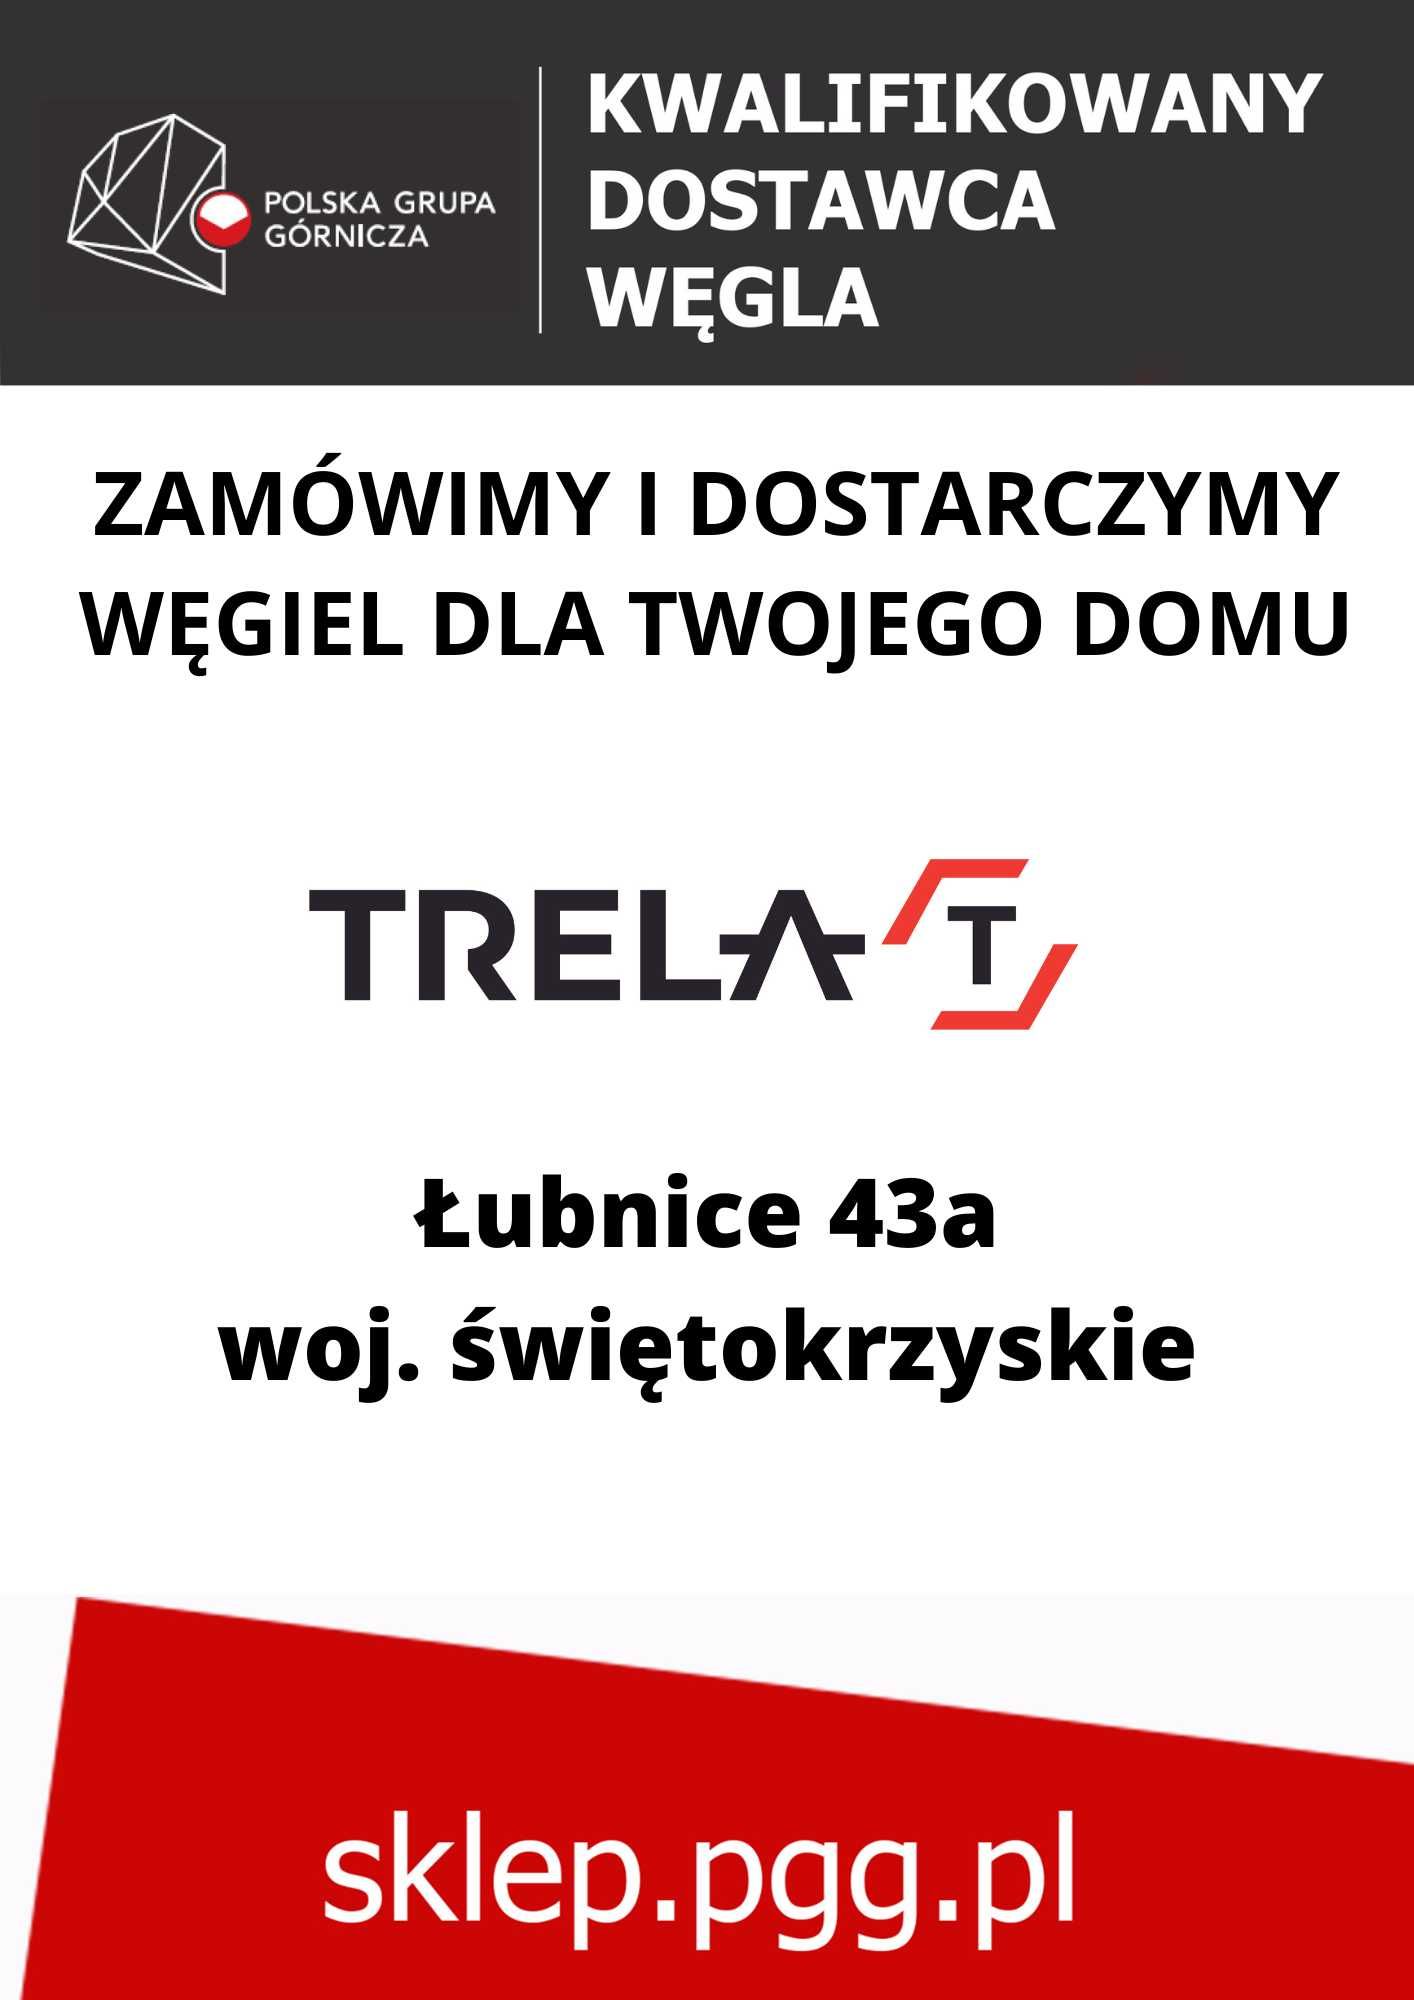 Węgiel PIAST/Mysłowice-Wesoła/Staszic/Ziemowit/Marcel: Kostka, orzech